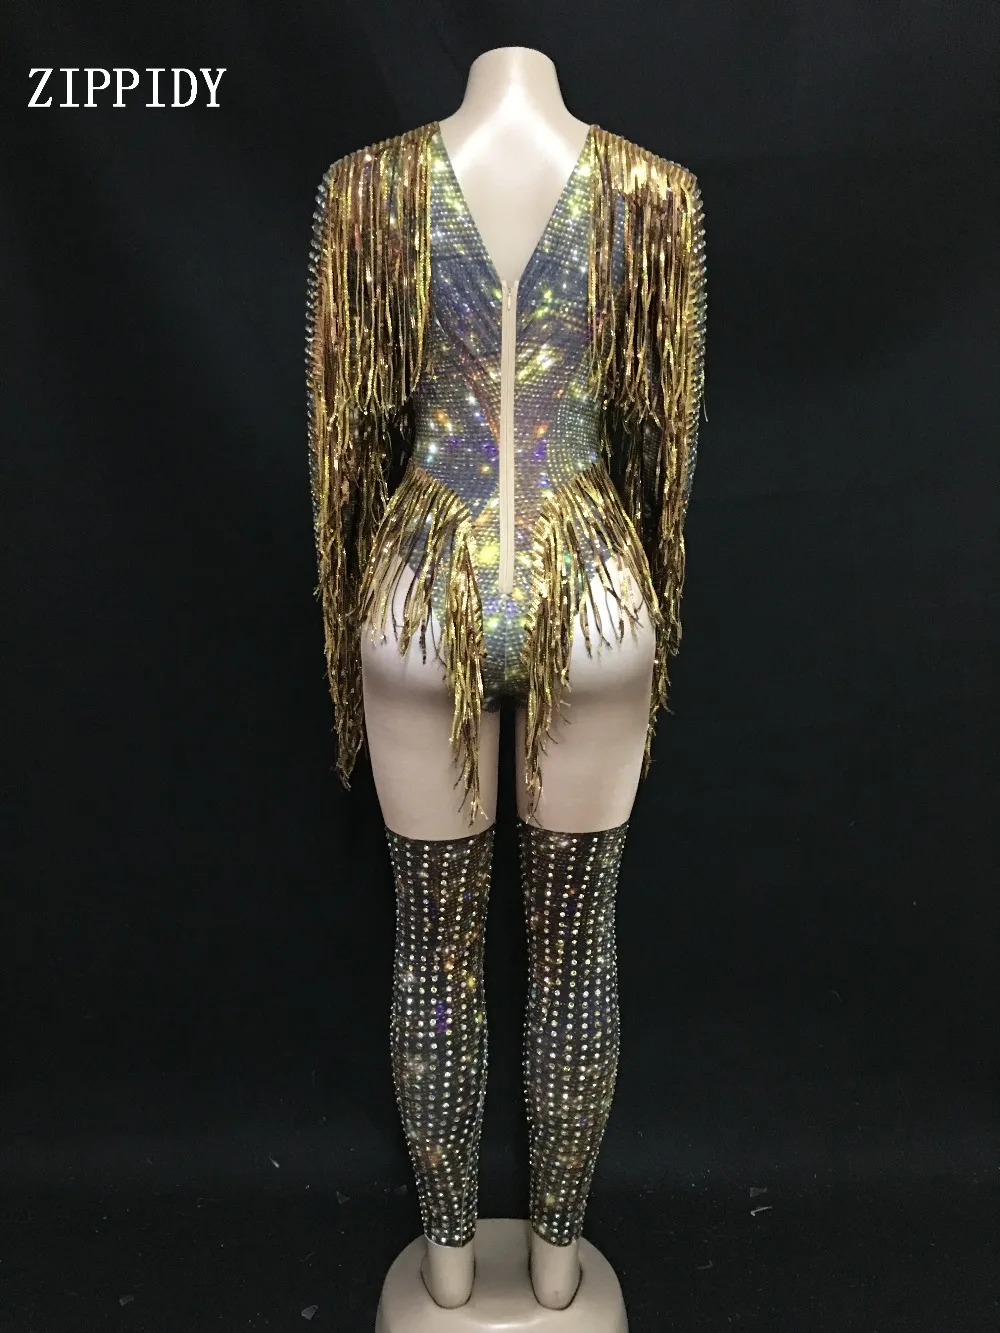 Золотой бахрома Стразы сексуальный боди для женщин джаз танец большой эластичный купальник наряд вечернее шоу цельный сексуальный костюм одежда